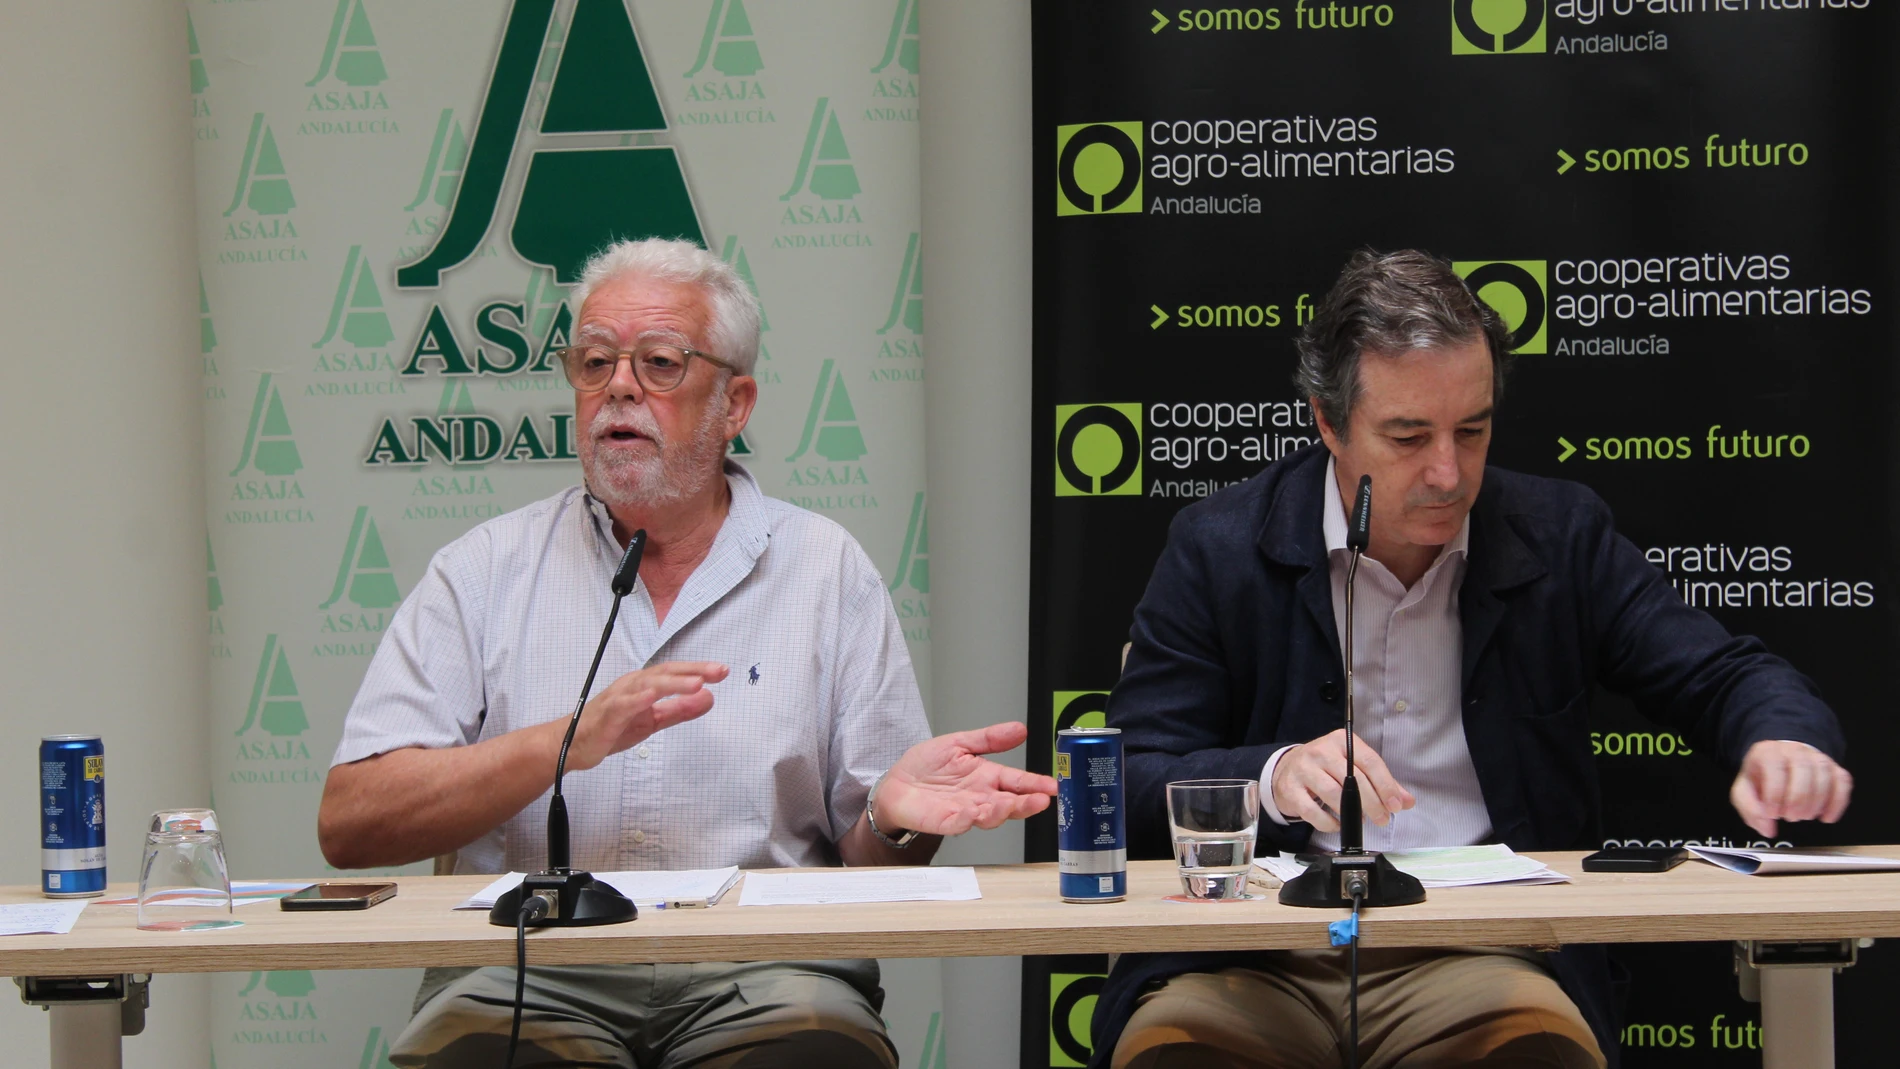 Rueda de prensa ofrecida por Asaja y Cooperativas Agro-alimentarias de Andalucía